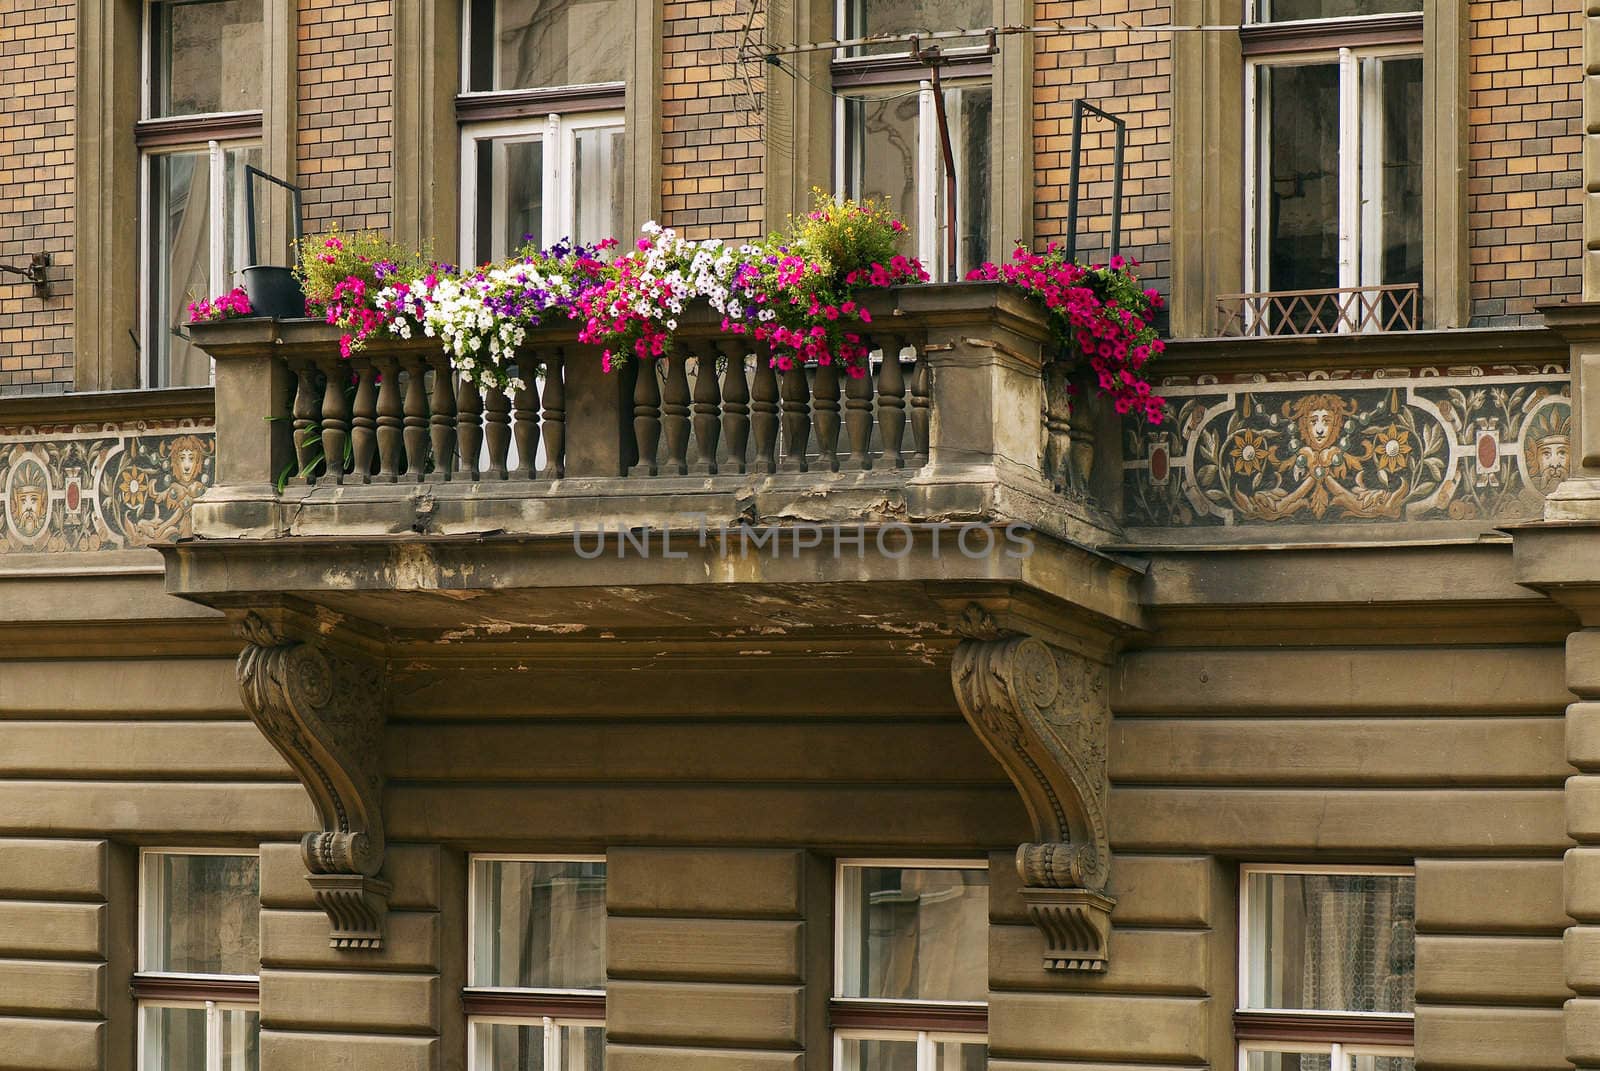 Balkony by Kamensky